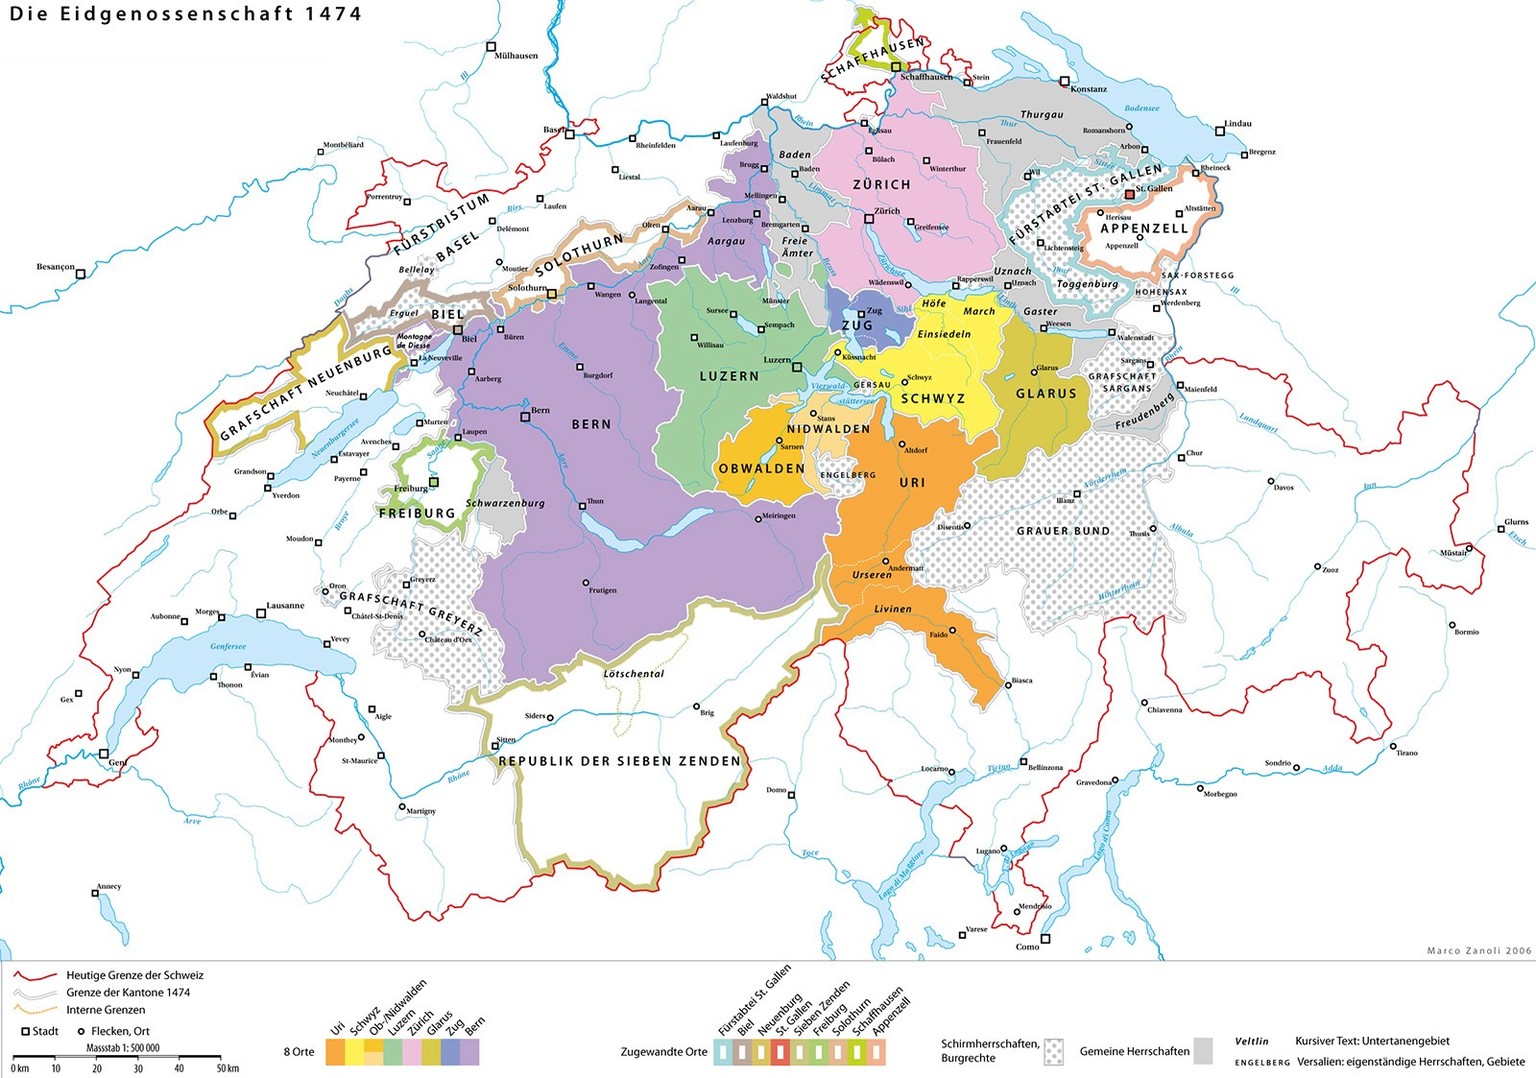 Die Eidgenossenschaft um 1474.
https://commons.wikimedia.org/wiki/File:Historische_Karte_CH_1474.png